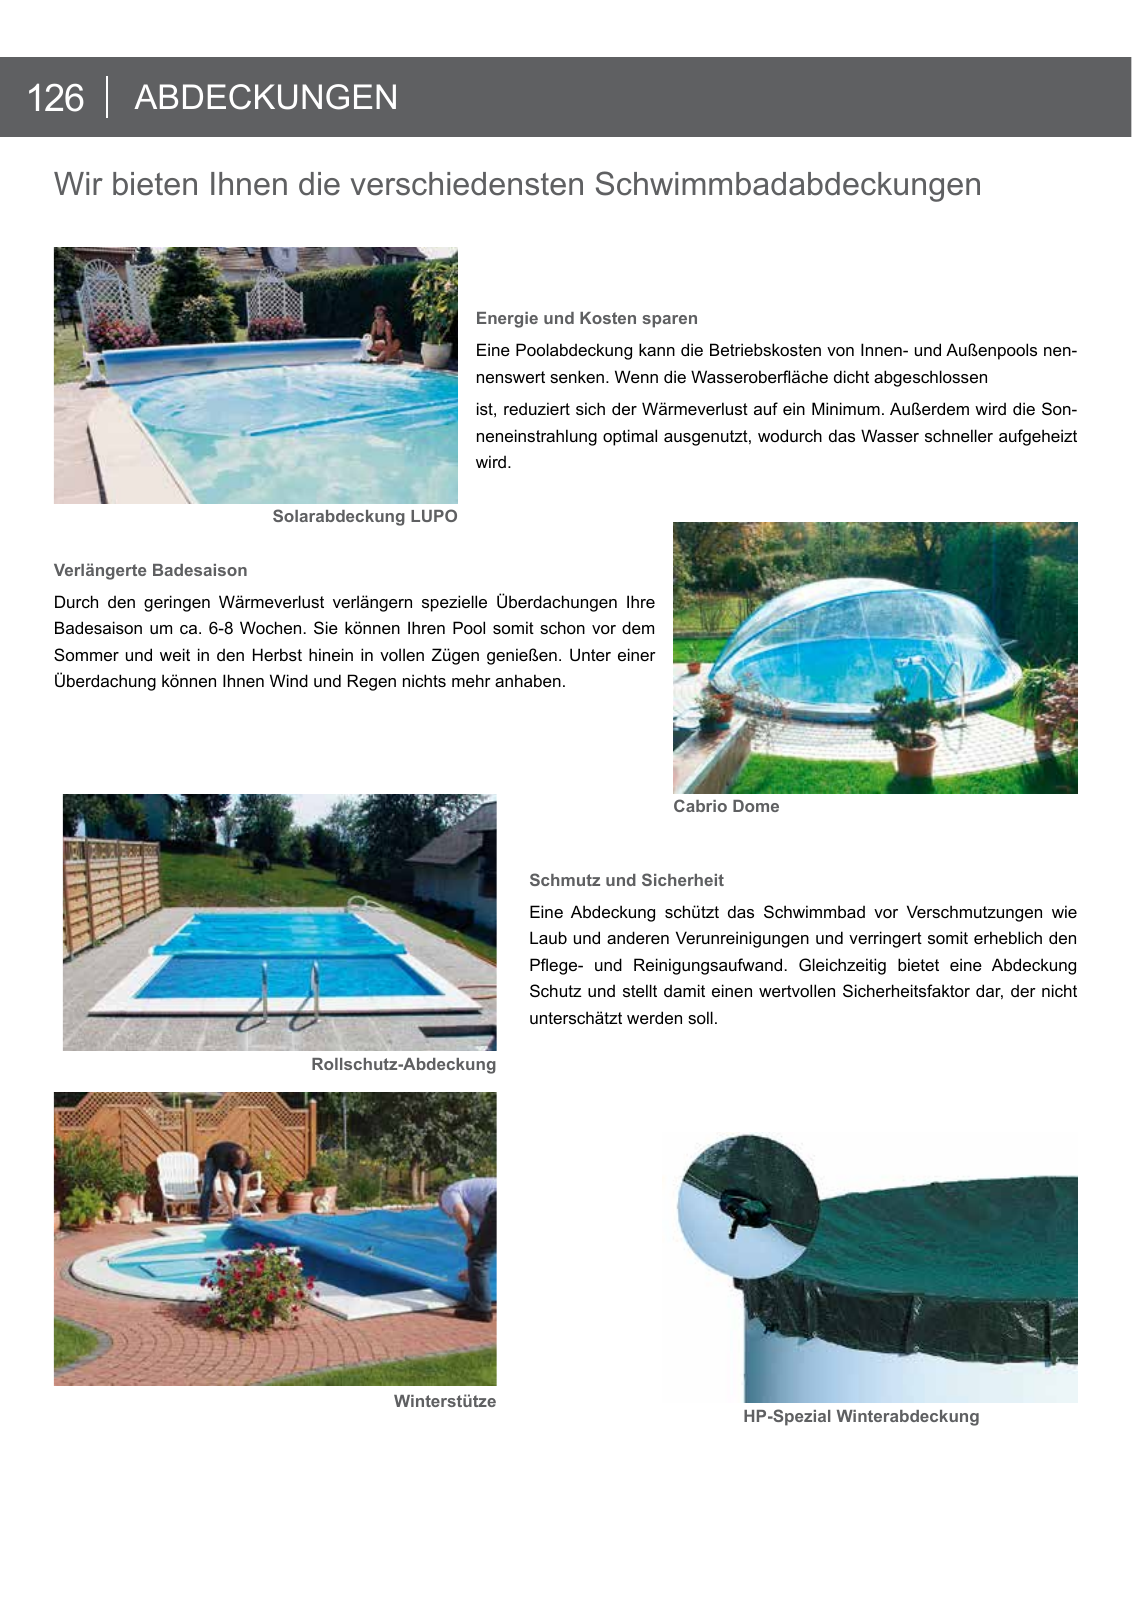 Vorschau arcana Schwimmbadkatalog 2016 Seite 126